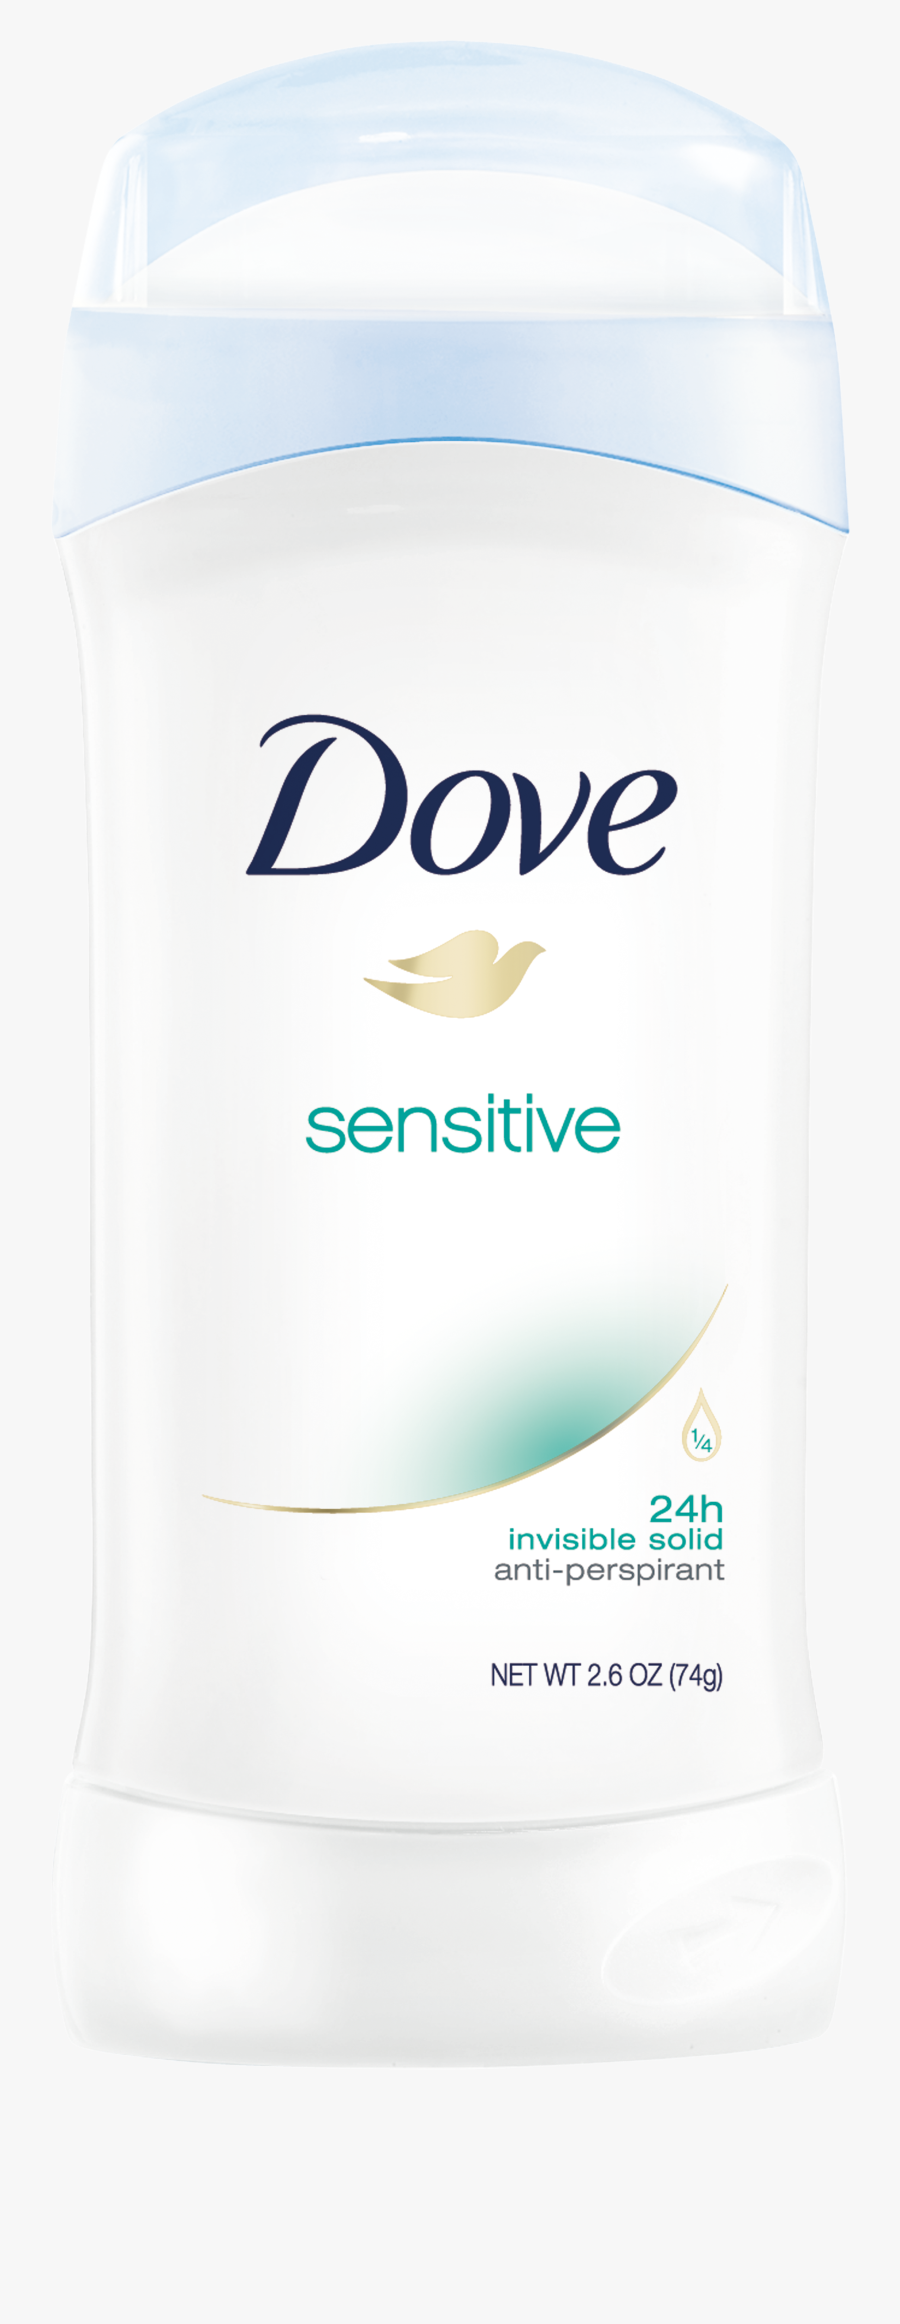 Dove Invisible Solid Antiperspirant - Dove Deodorant Original Clean, Transparent Clipart